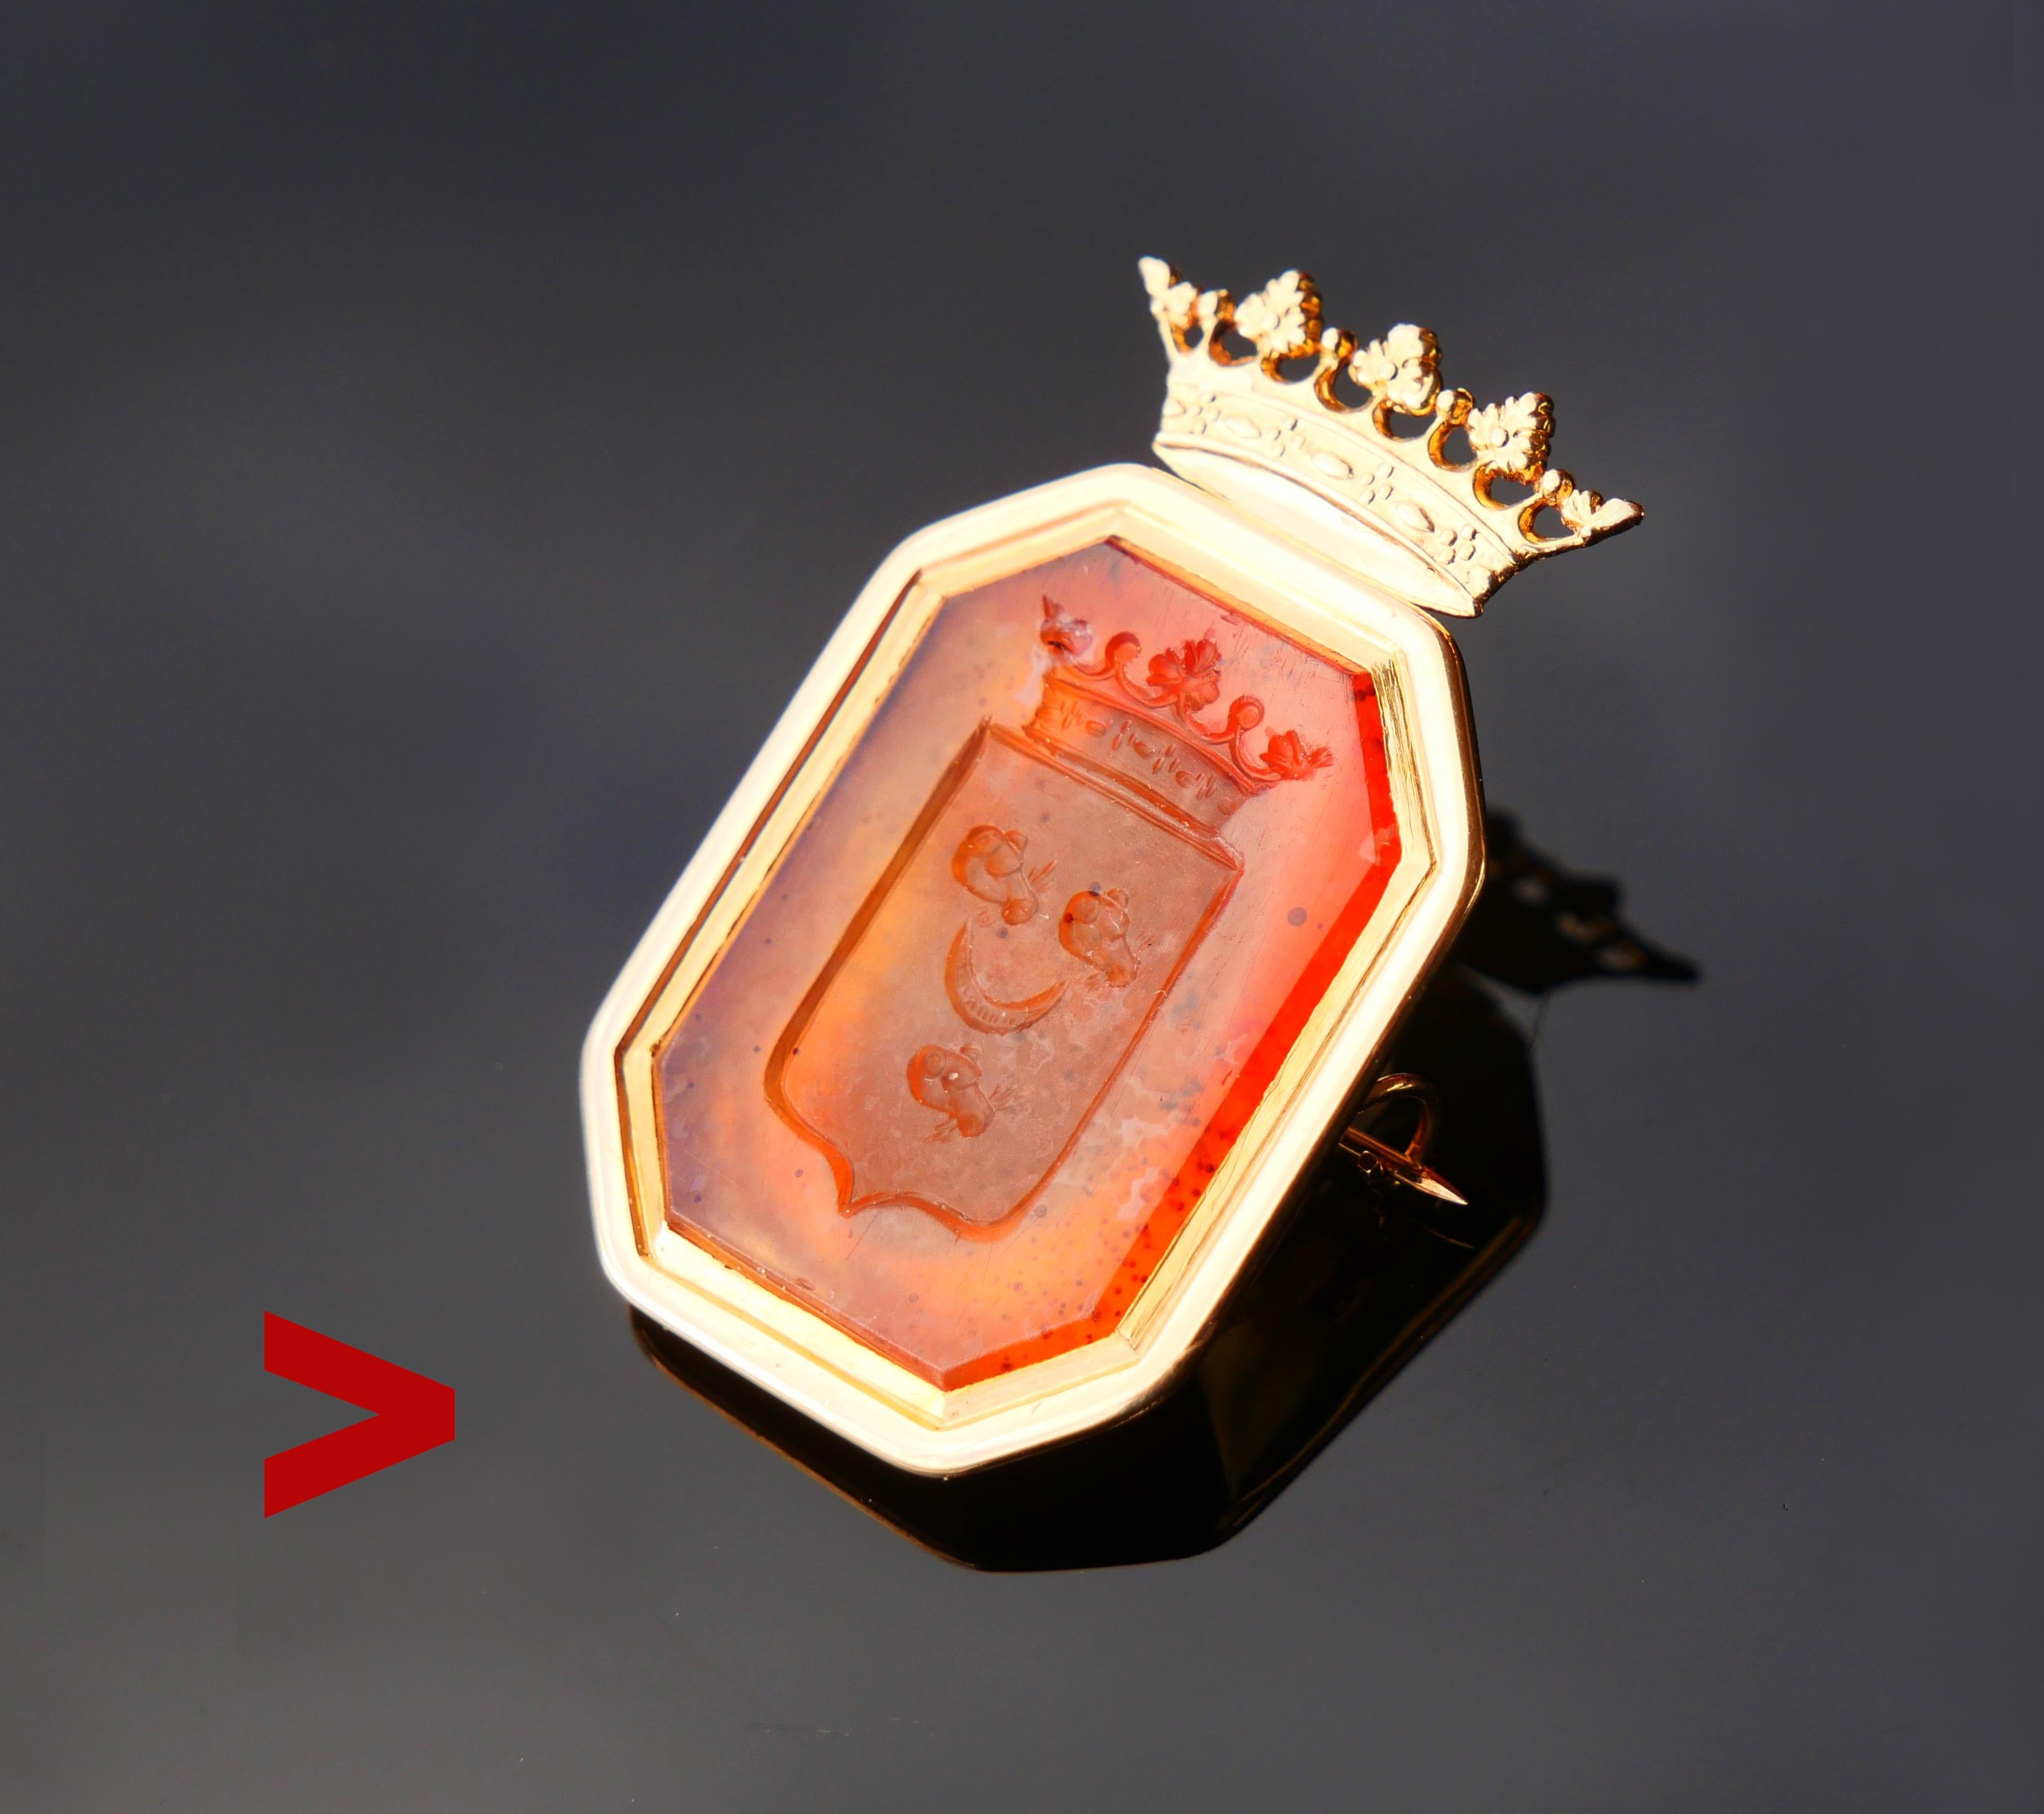 Broche ancienne en or orange 18 carats datant du 18e - 19e siècle, sertie d'une pierre de cornaline et présentant une variation miniature gravée à la main des armoiries de l'ancienne famille noble suédoise von Belfrage : trois têtes de loup coupées